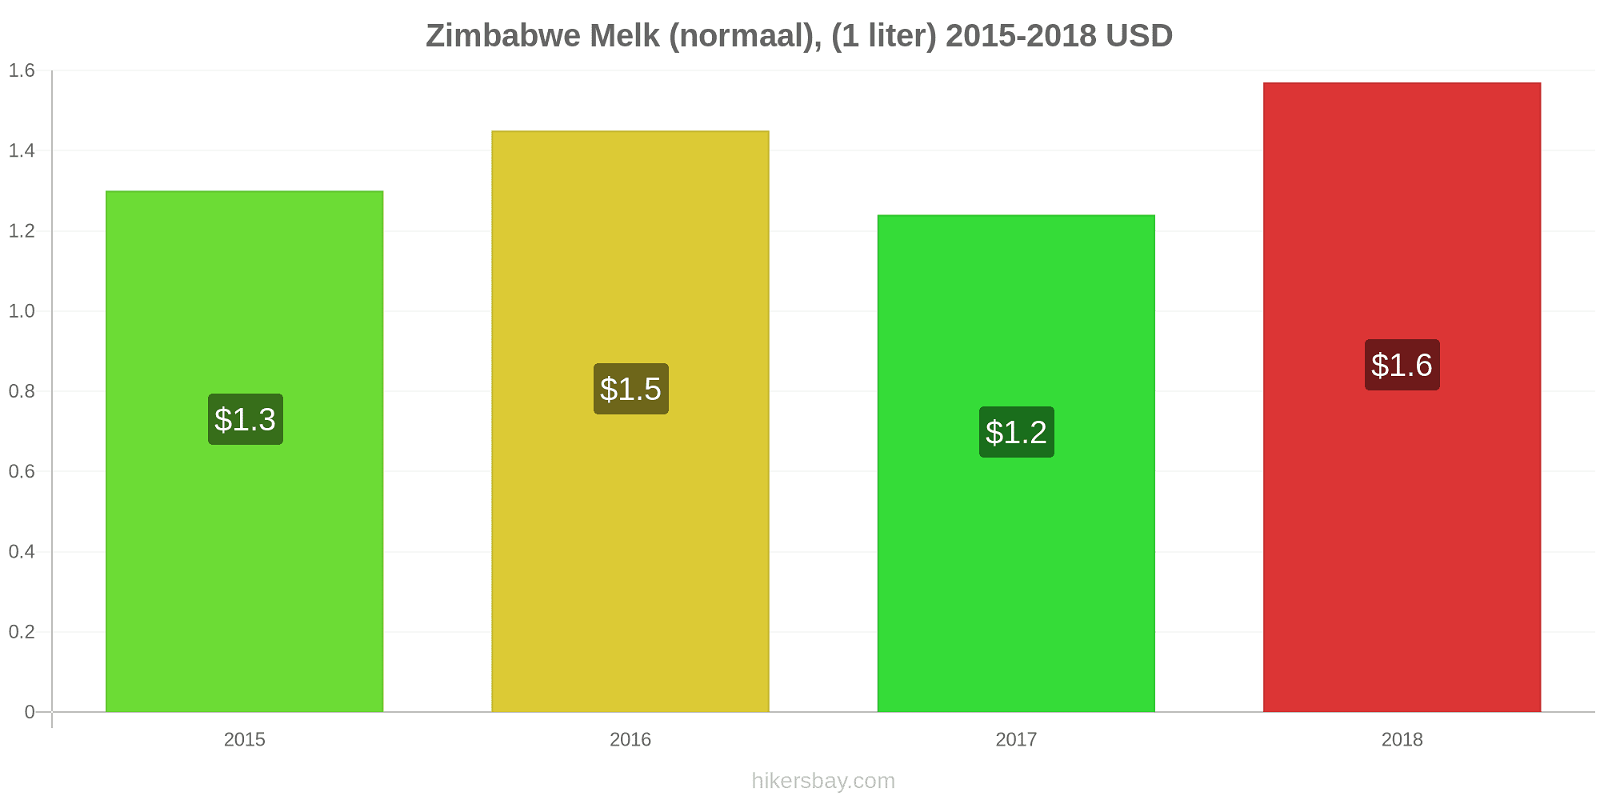 Zimbabwe prijswijzigingen Melk (regelmatige), (1 liter) hikersbay.com